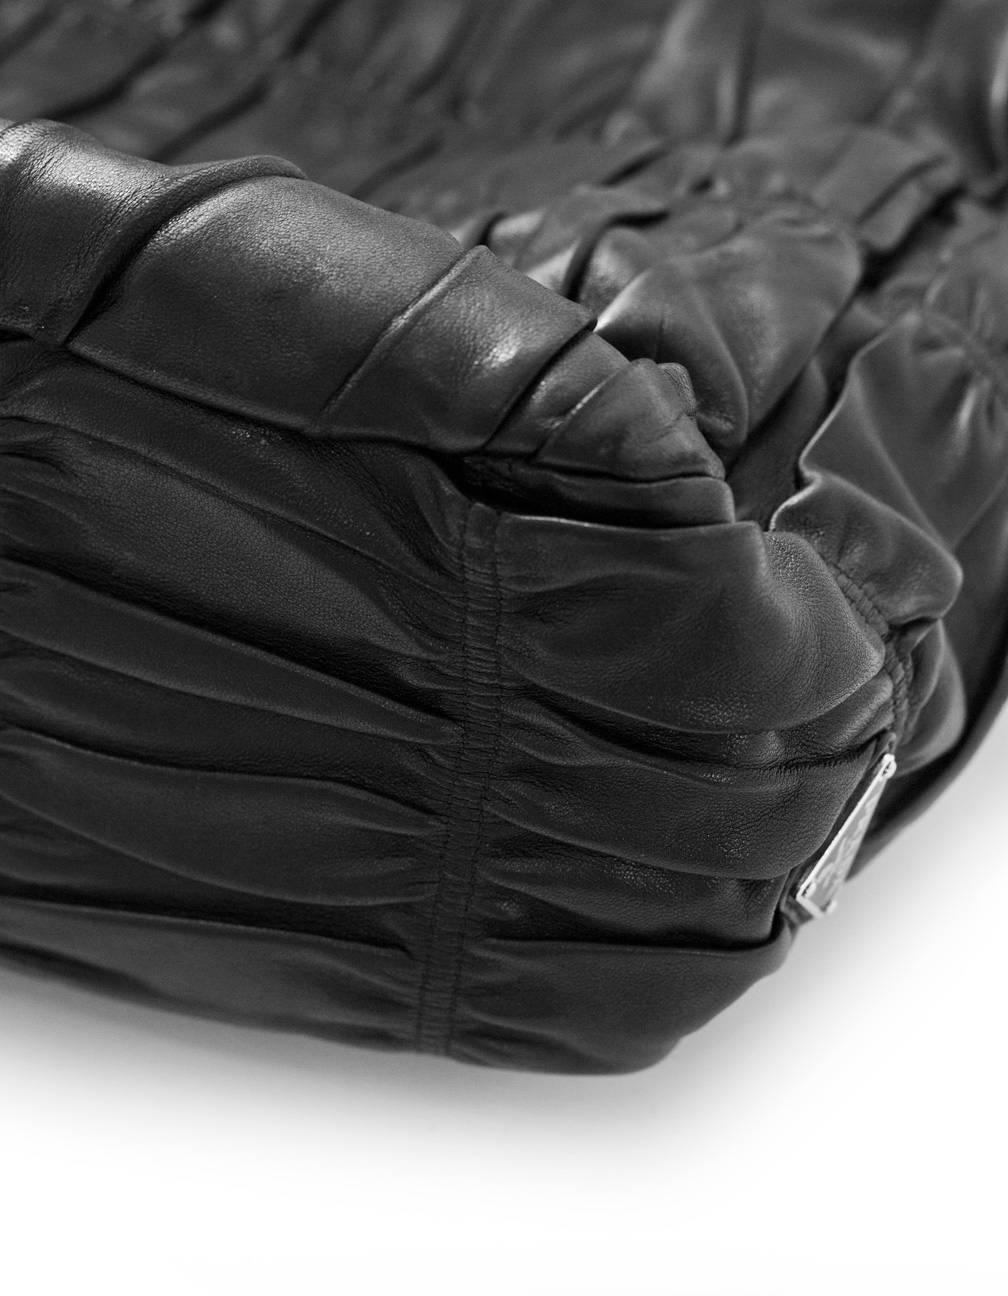 Prada Black Nappa Gaufre Leather Sacca Hobo Bag 1